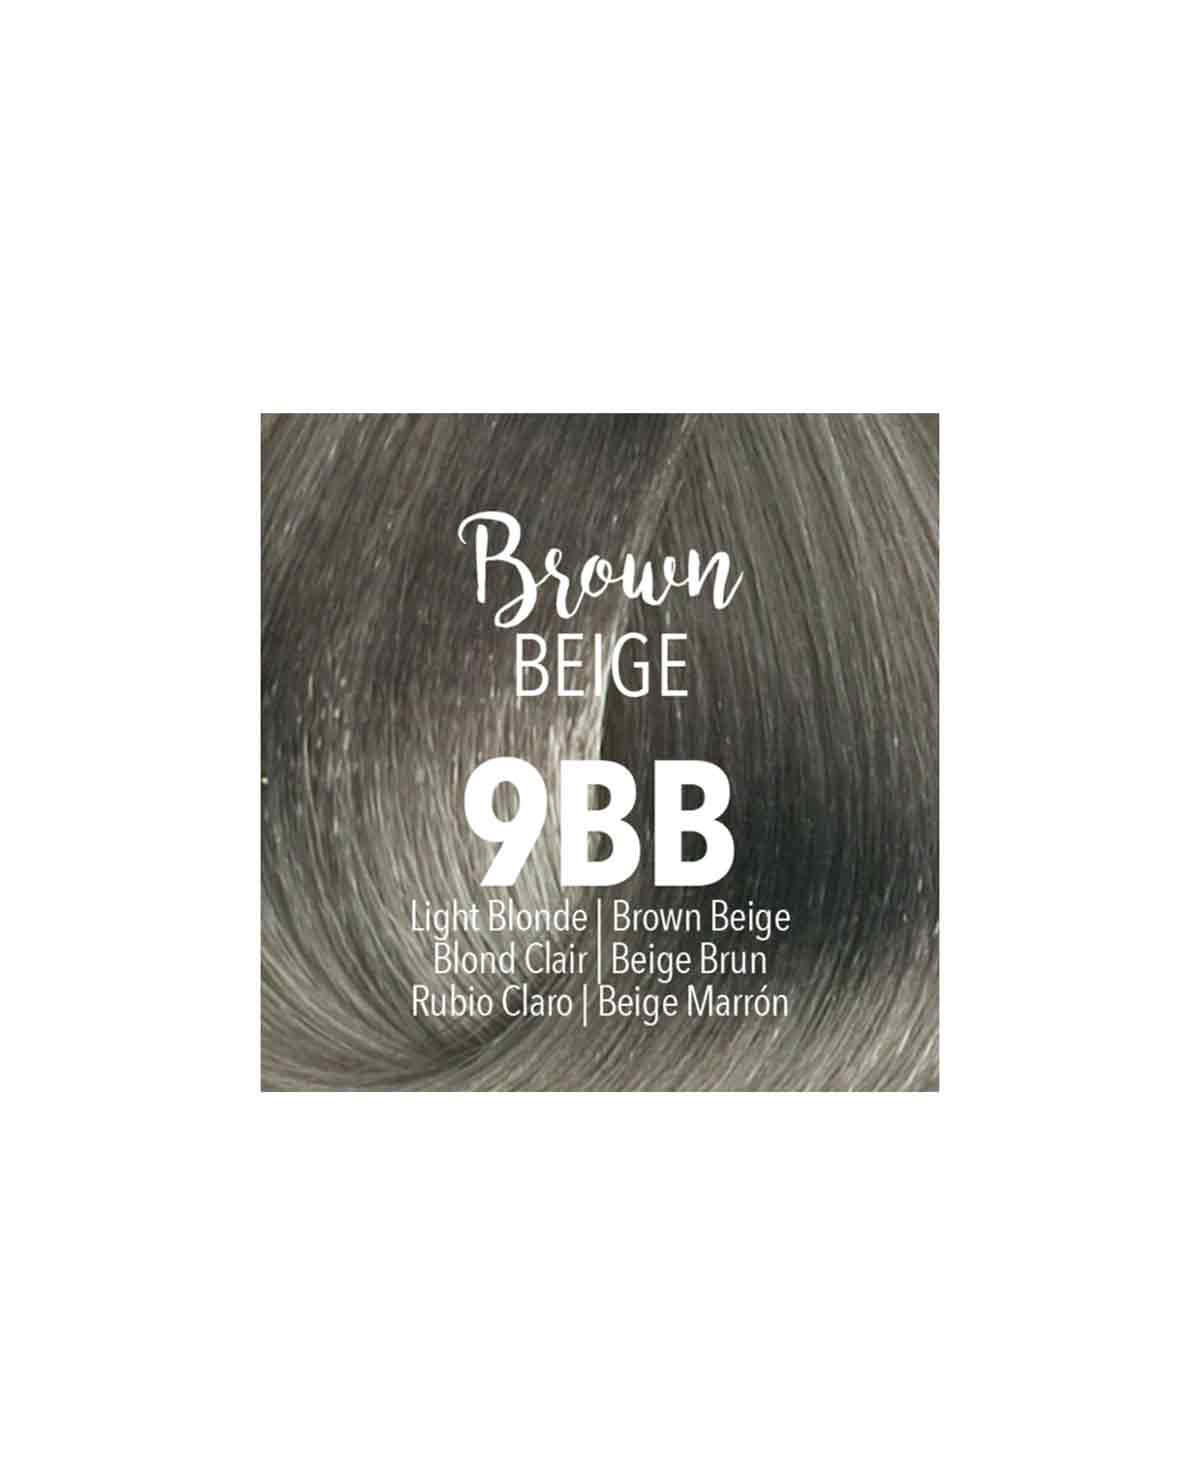 Mydentity - 9BB Light Blonde Brown Beige Demi-P